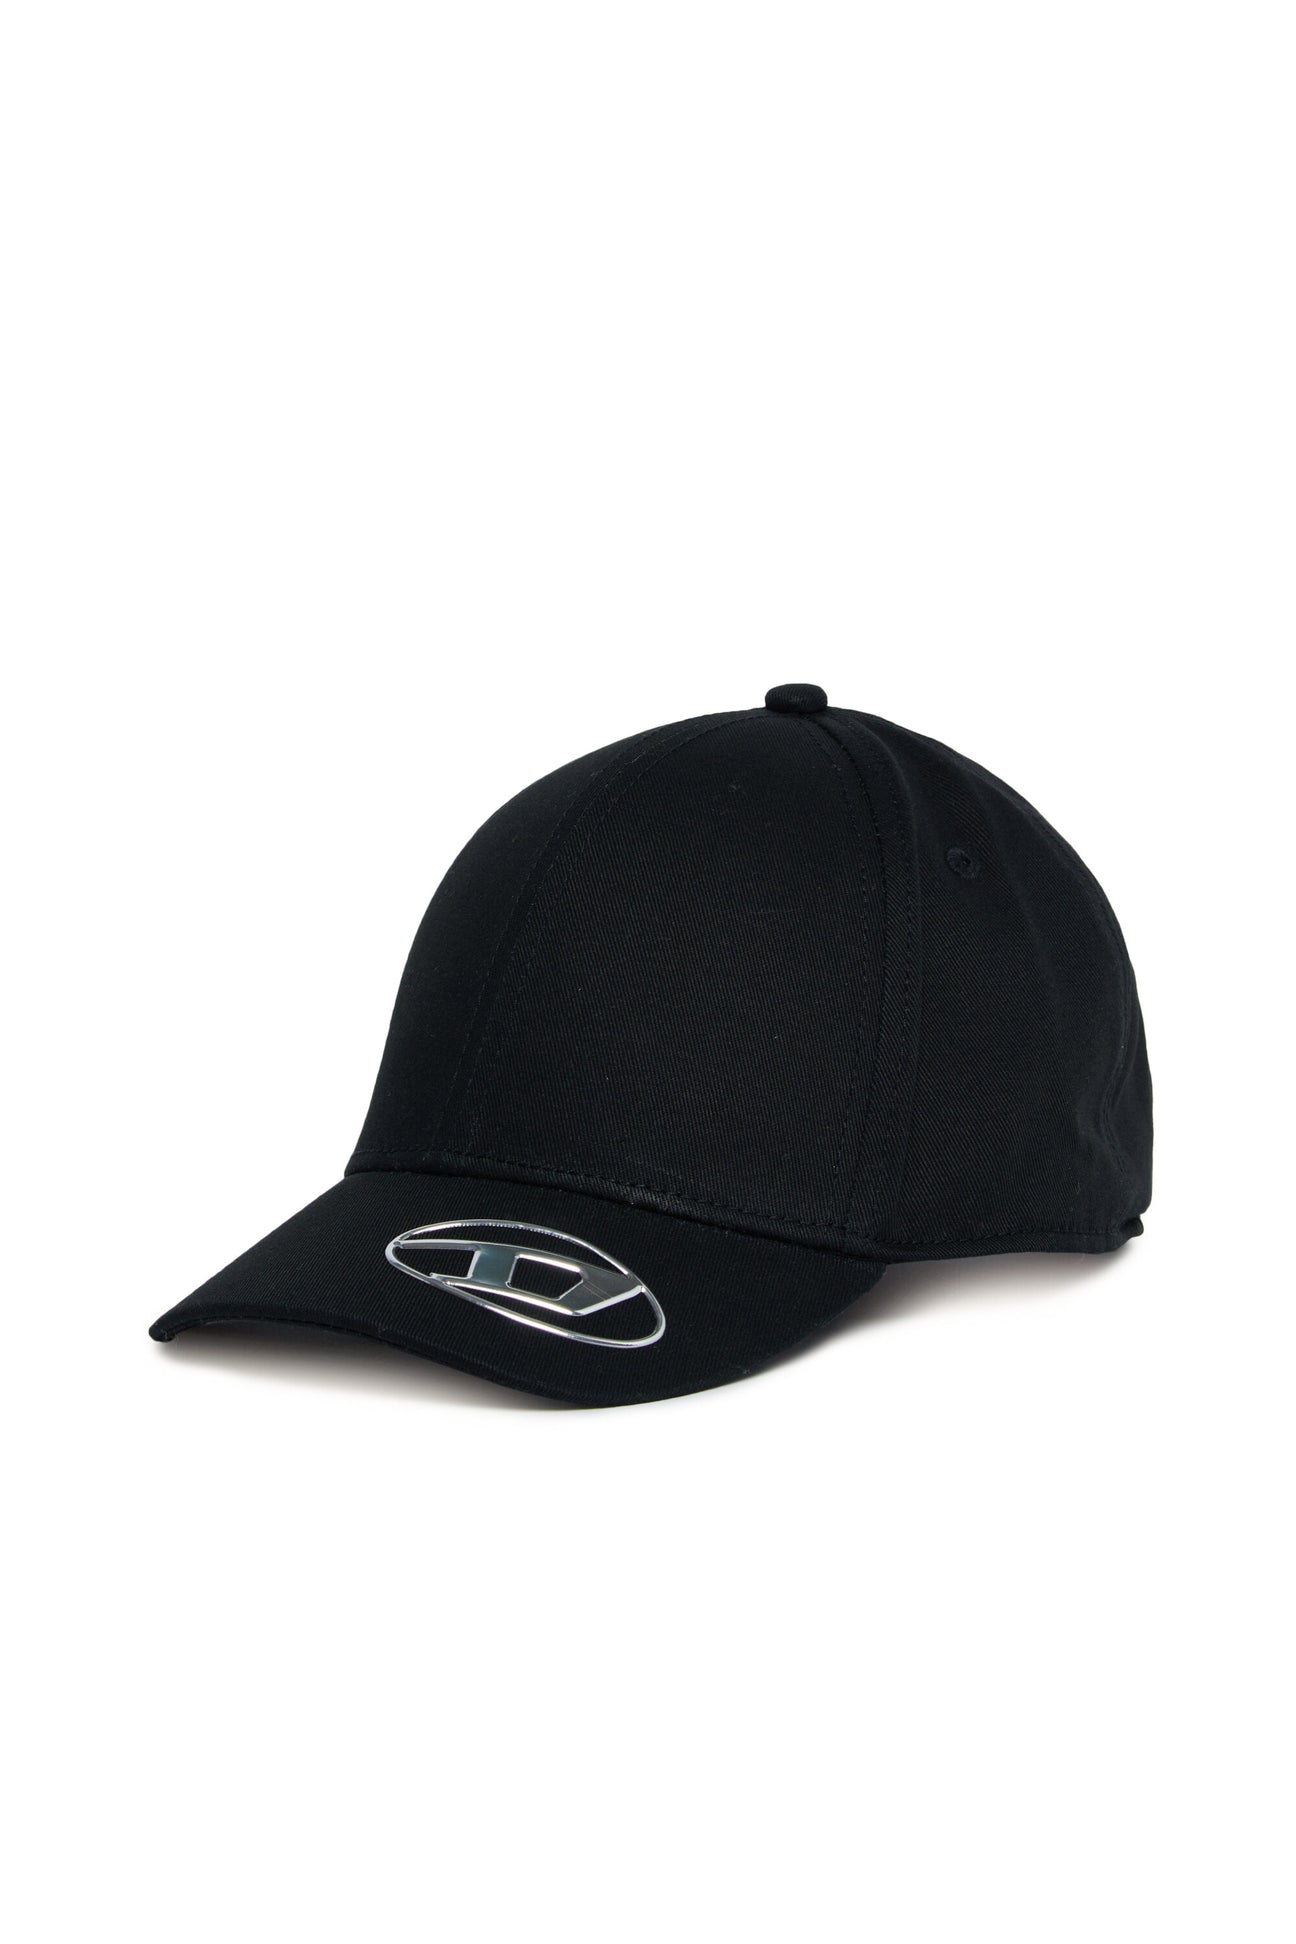 Oval D branded garbardine baseball cap 